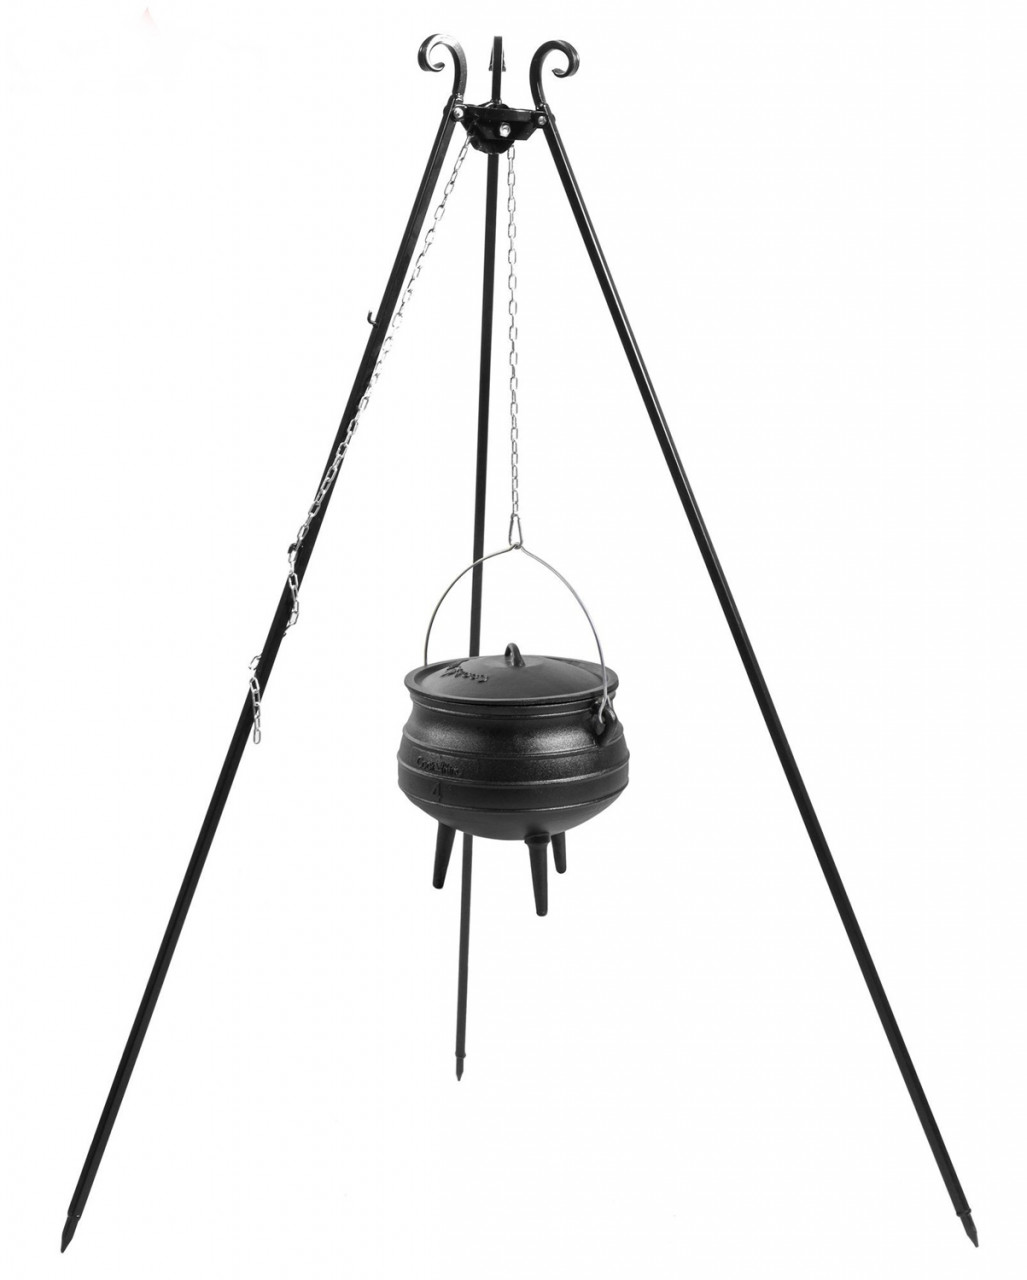 Gusseisenkessel 13 L mit Dreibein Gestell H 180 cm Gulaschtopf zum Kochen "African Pot" Grillständer von CookKing